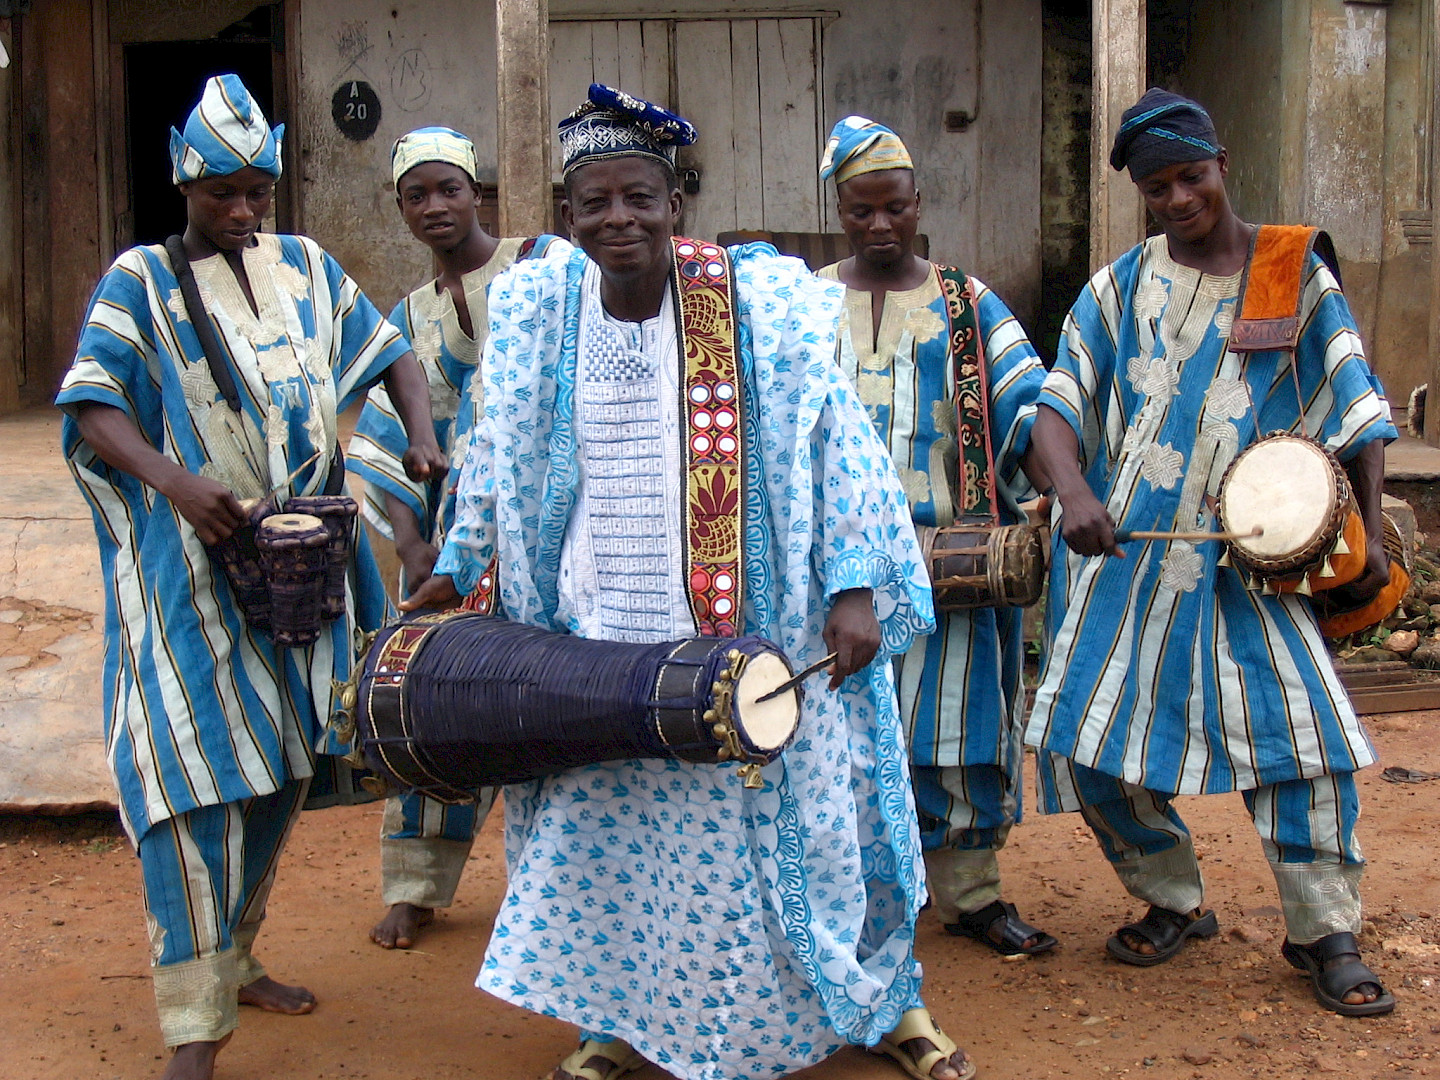 Mit Trommeln sprechen. Westafrikanische percussion skills im globalen Gespräch